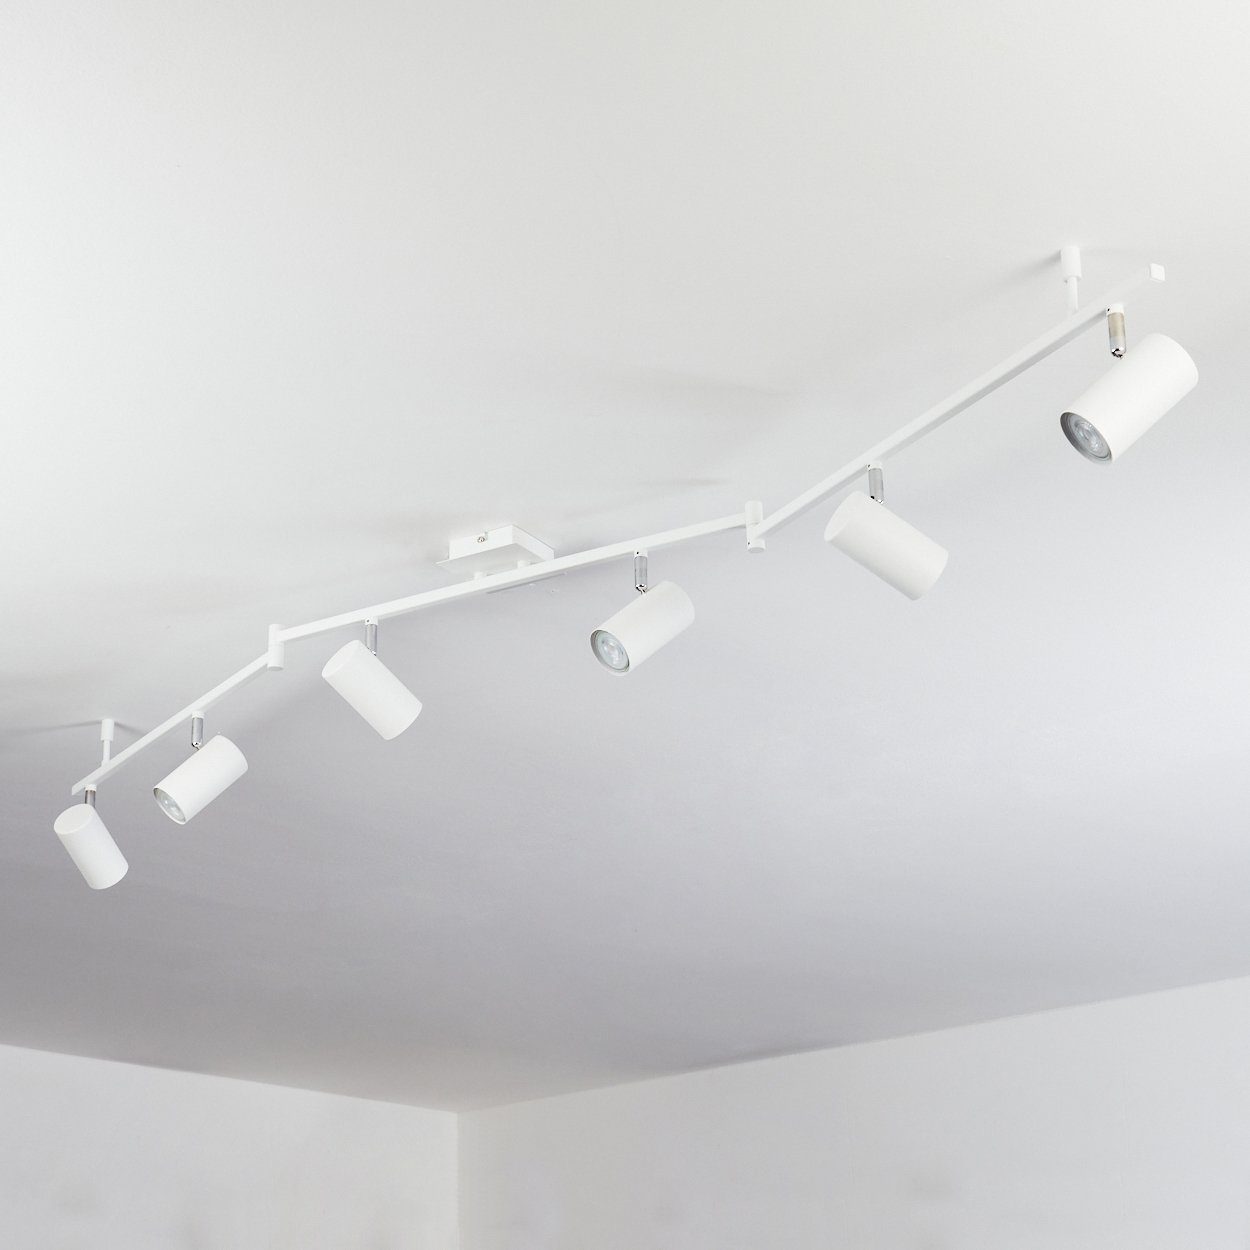 Leuchtenarmen, GU10 in moderne hofstein ohne Leuchtmittel, 25 »Gambellara« aus verstellbaren Deckenleuchte Deckenlampe Weiß/Chrom, und mit max. Metall Strahlern